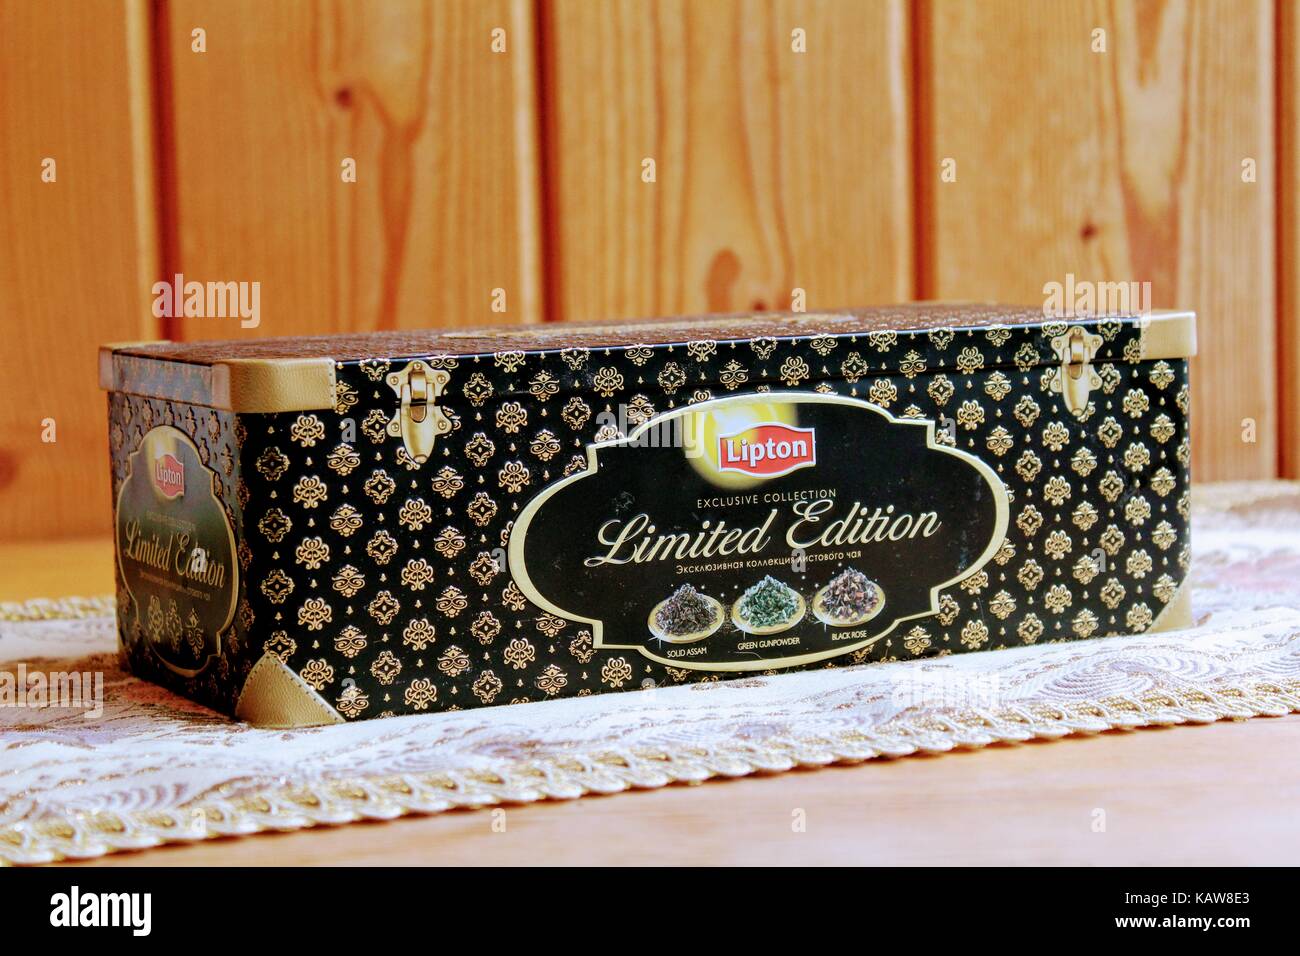 Exklusive box von Lipton Tee (Limited Edition) auf einem Holztisch  Stockfotografie - Alamy